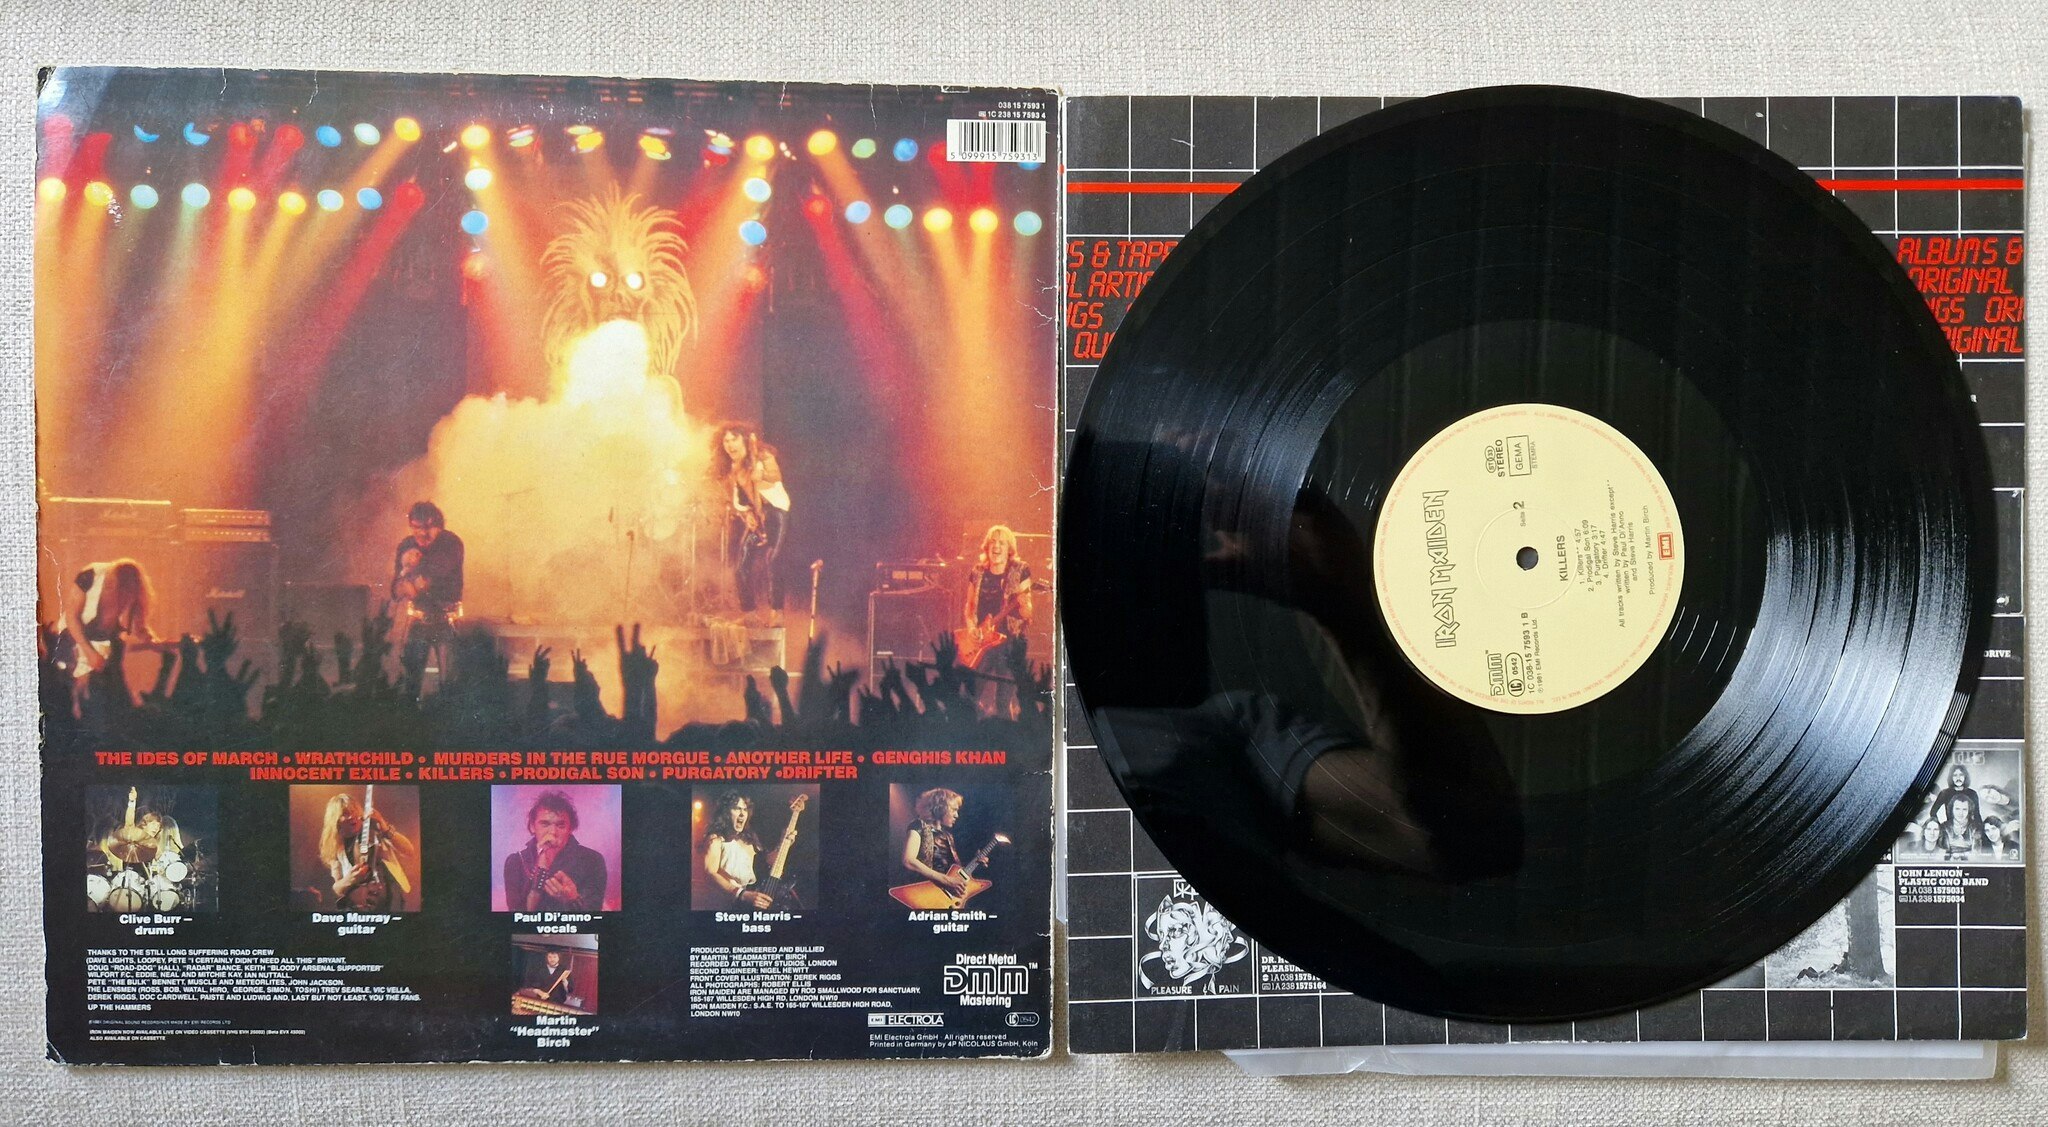 Iron Maiden, Killers. Vinyl LP